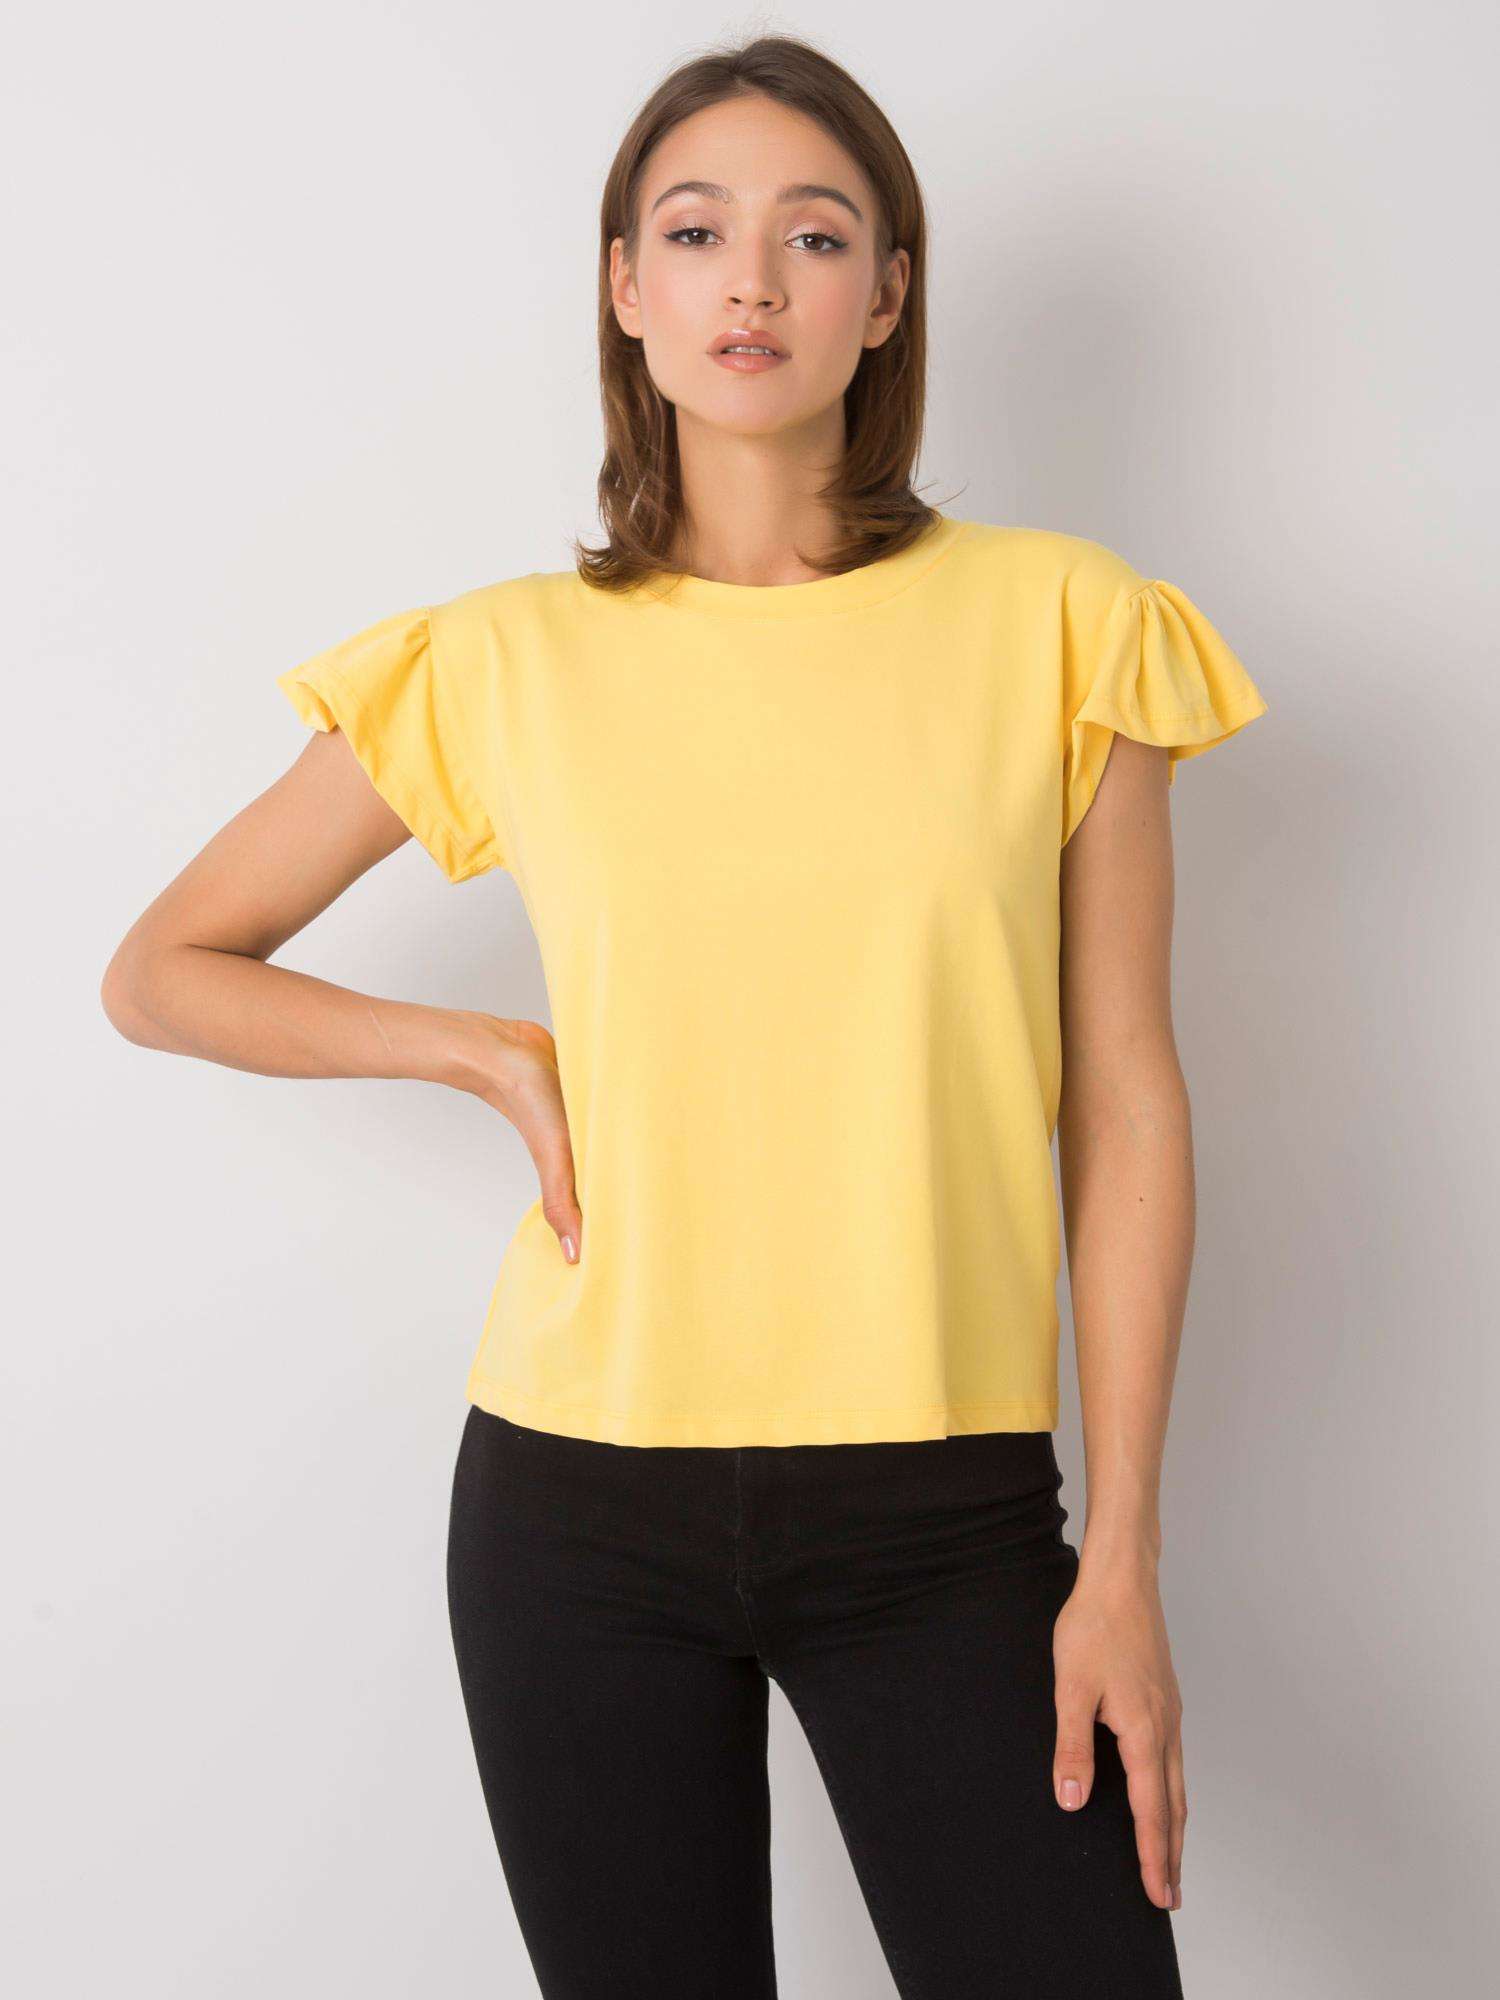 Světle žluté dámské tričko s volány RV-BZ-6724.69-yellow Velikost: S/M